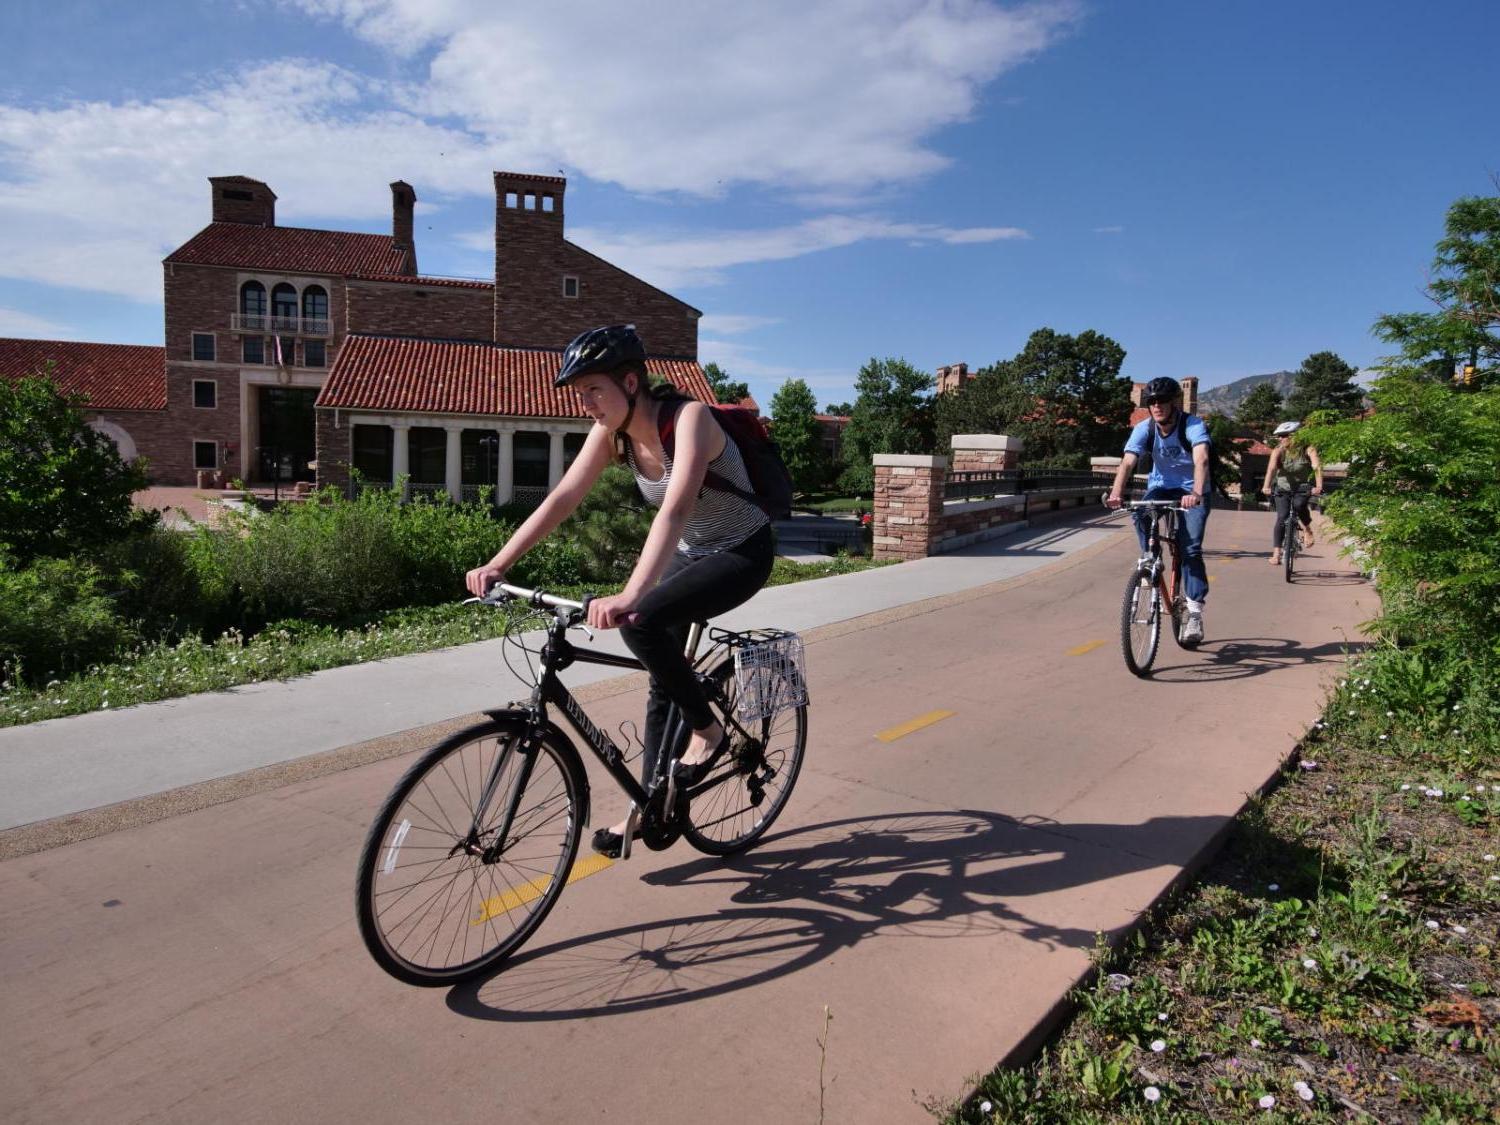 student biking on campus